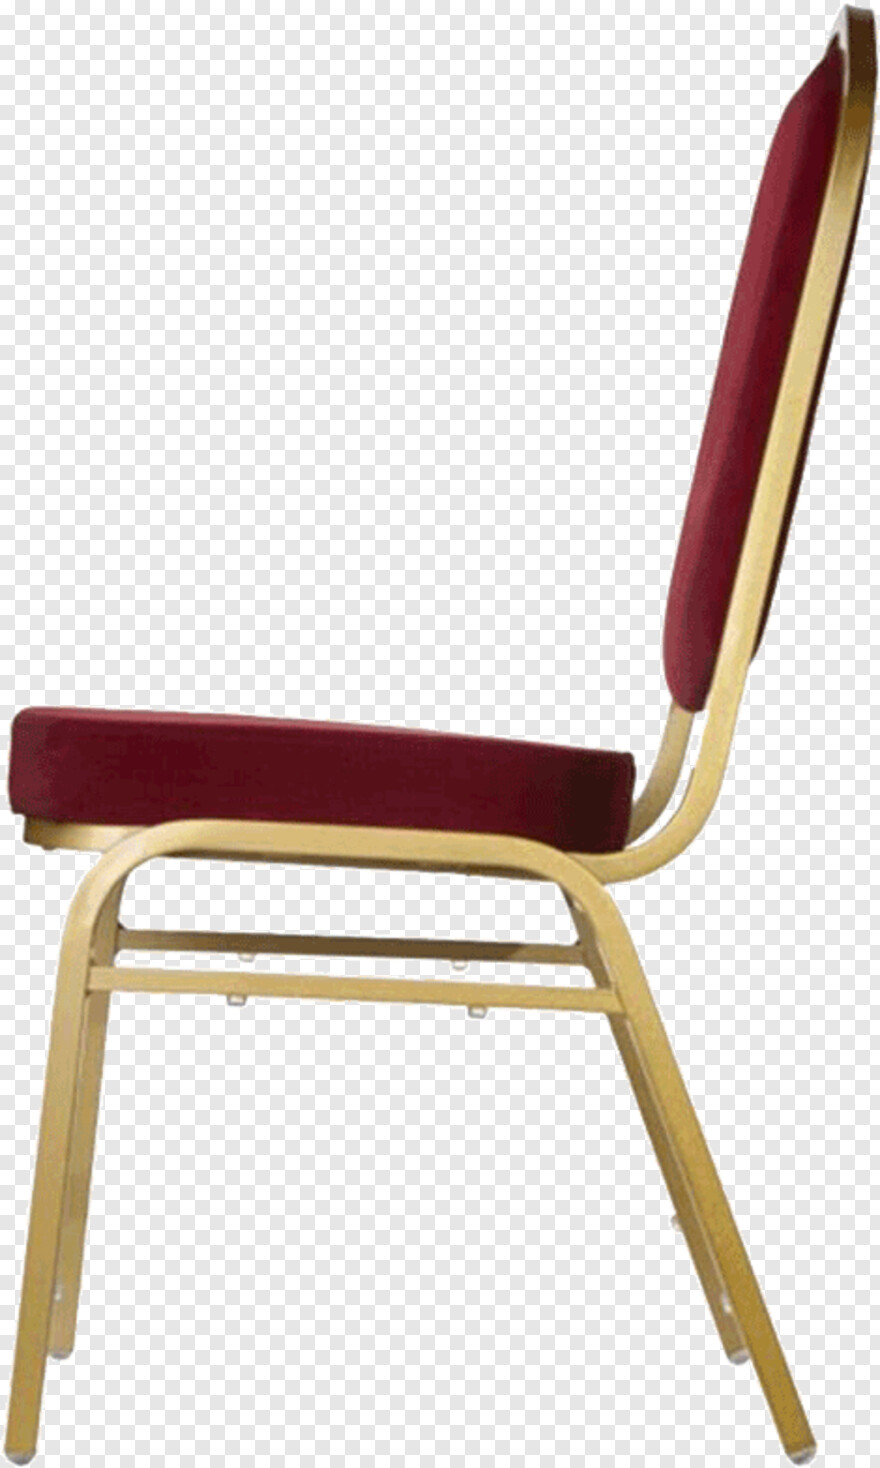 chair # 406849